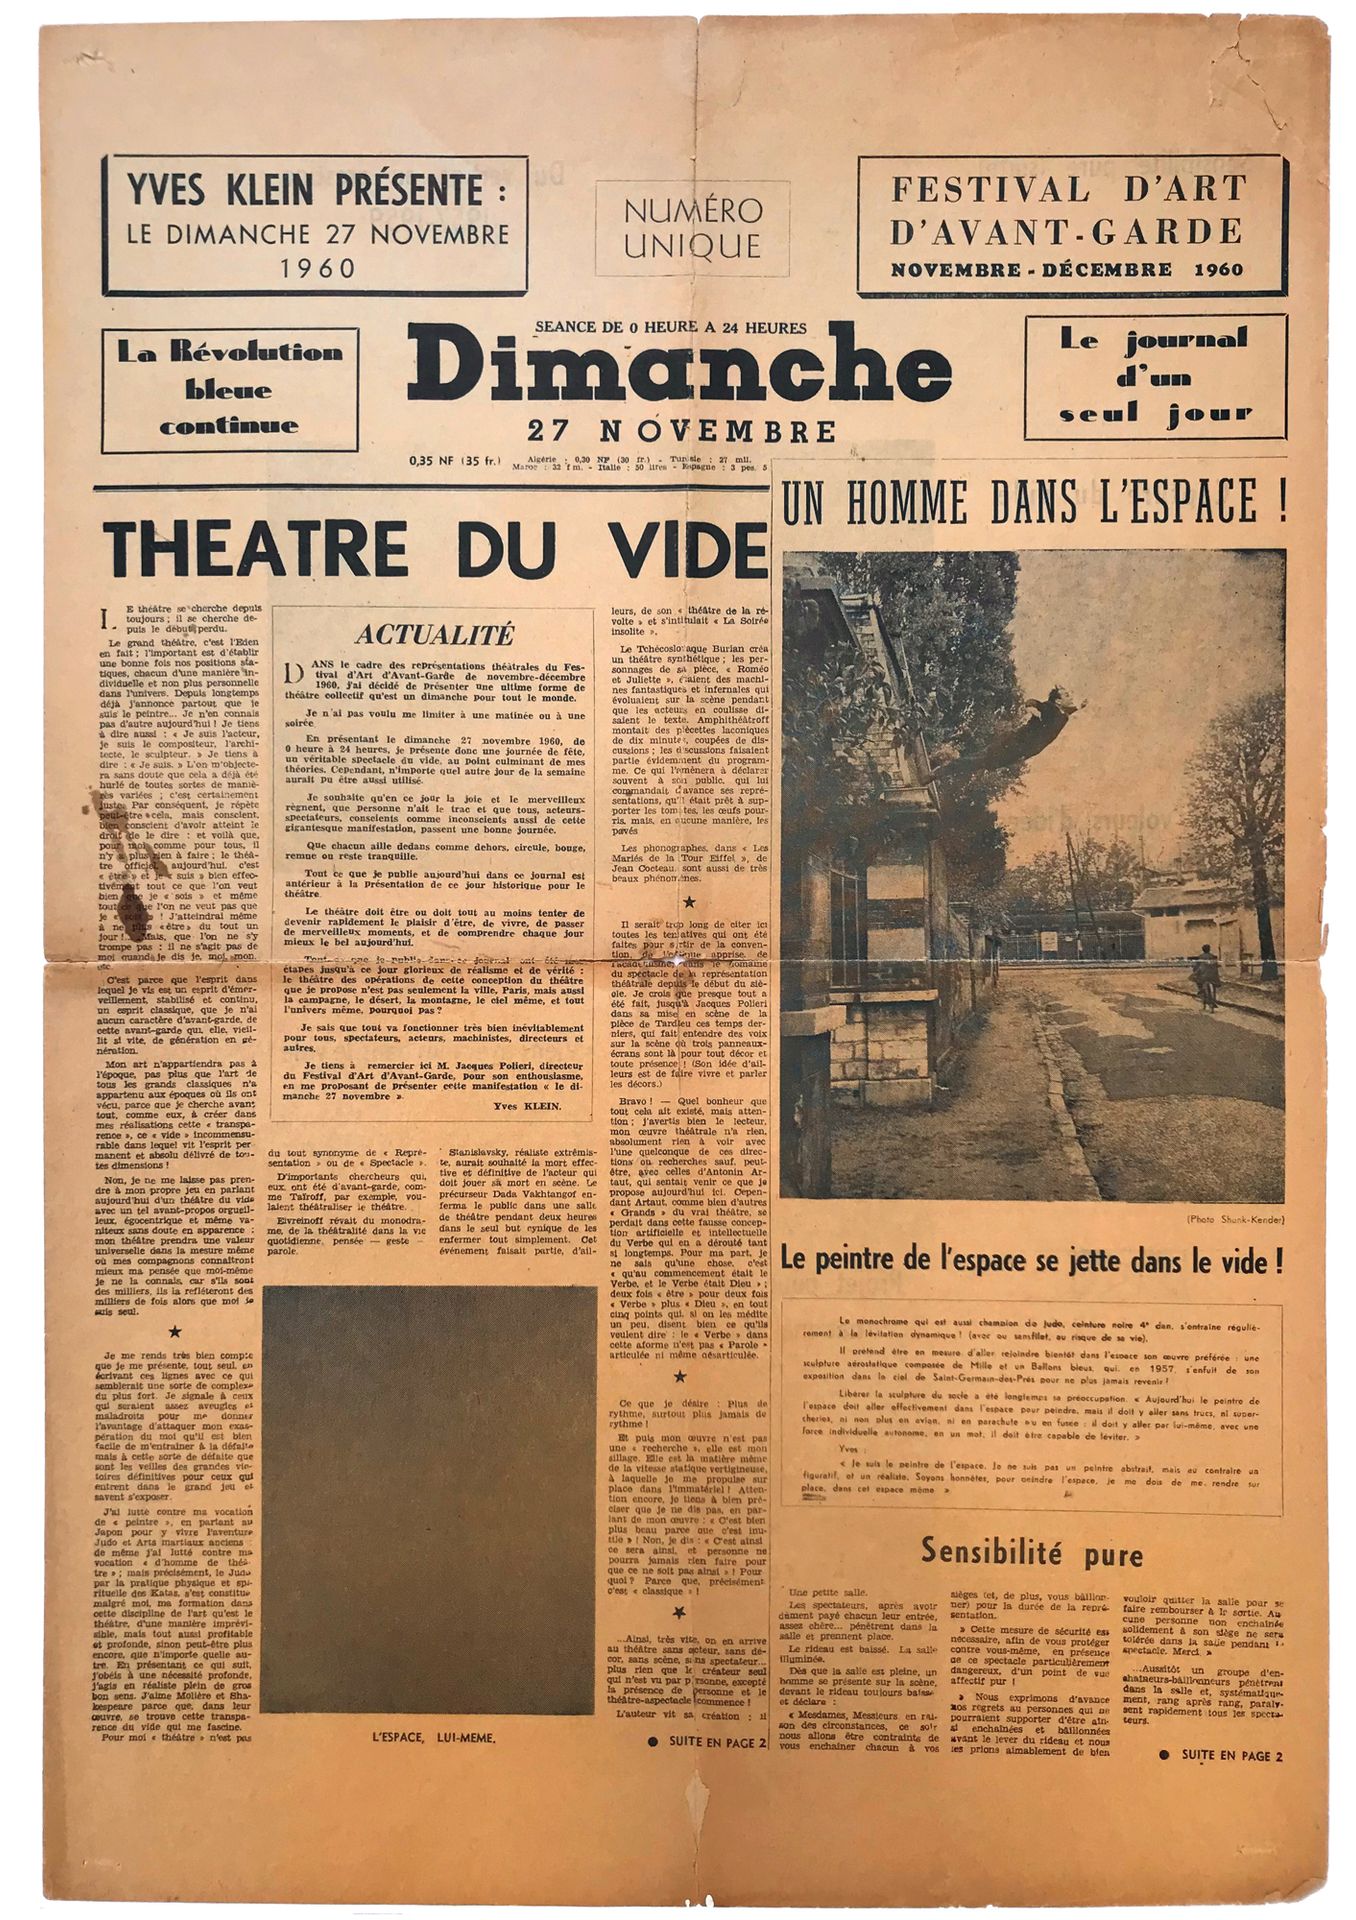 [YVES KLEIN] Le Journal d'un jour, 1960
Ejemplar original de este famoso diario &hellip;